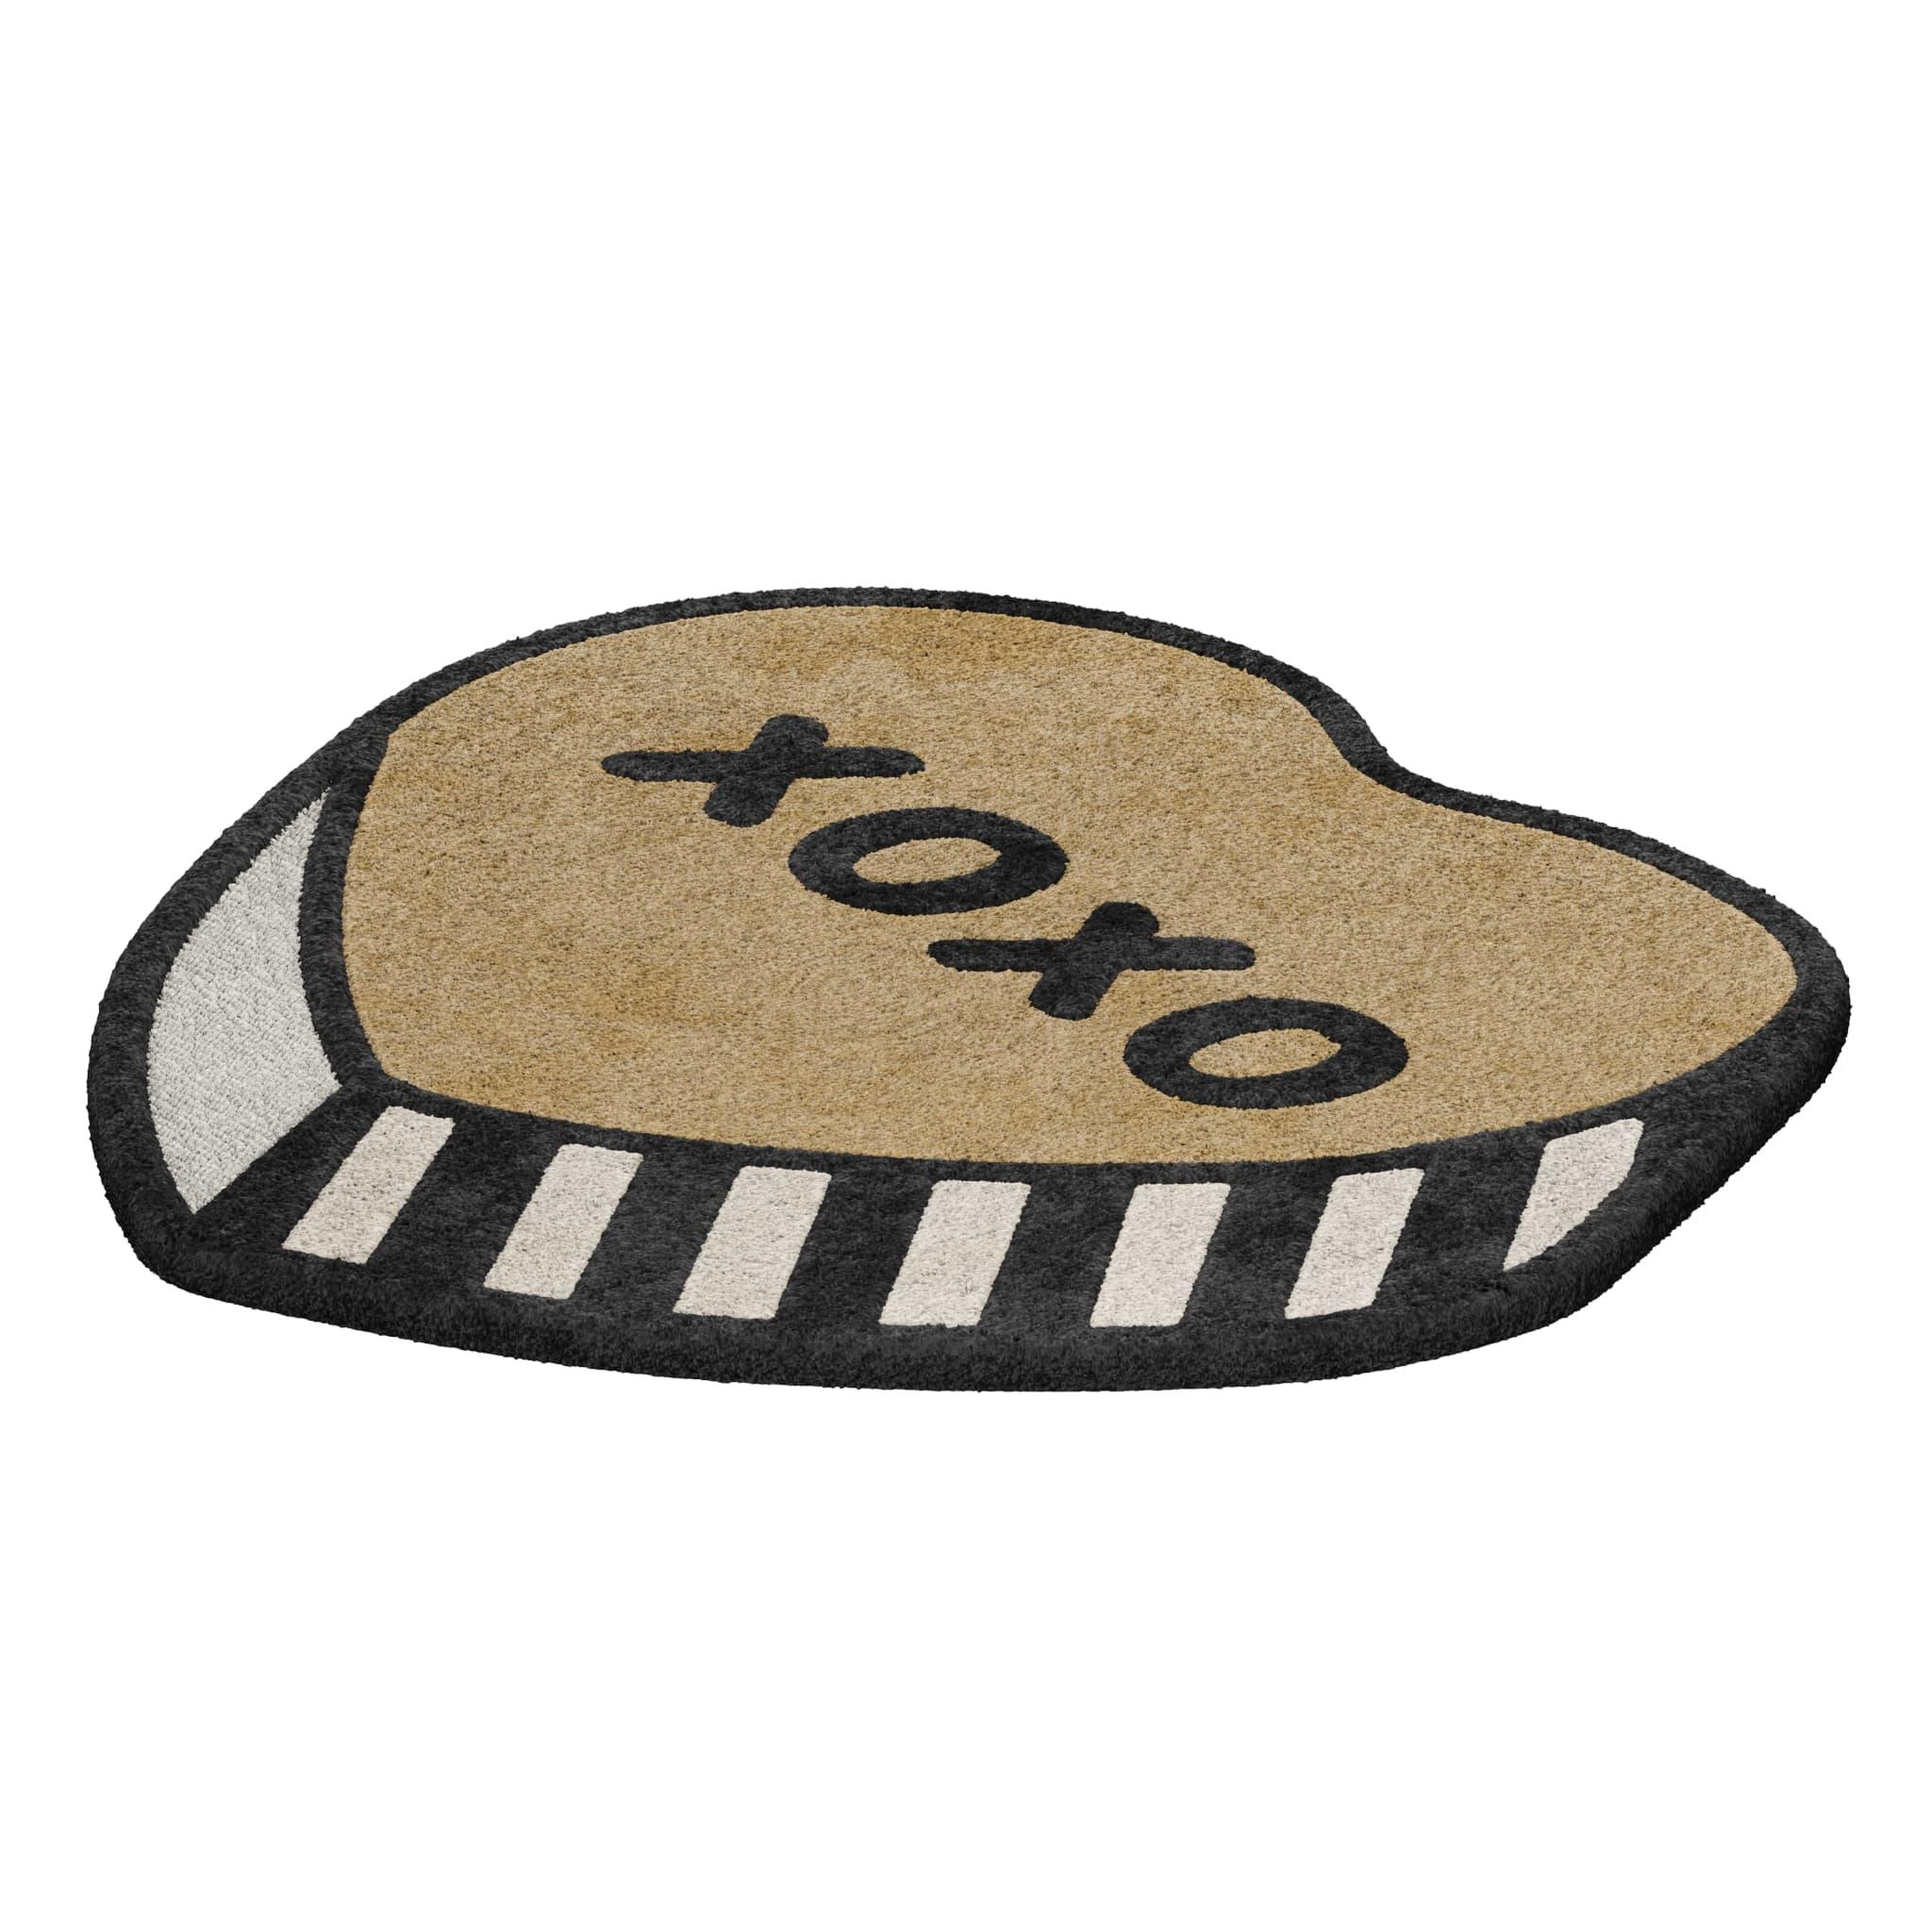 Tapis 'XOXO' ist ein Teppich für Haustiere, der speziell für Ihren pelzigen Freund entworfen wurde. Dieser Teppich für Haustiere wurde entwickelt, um Ihrem besten Freund den Komfort zu bieten, den er verdient. 

Teppiche in Bonbonform, hergestellt